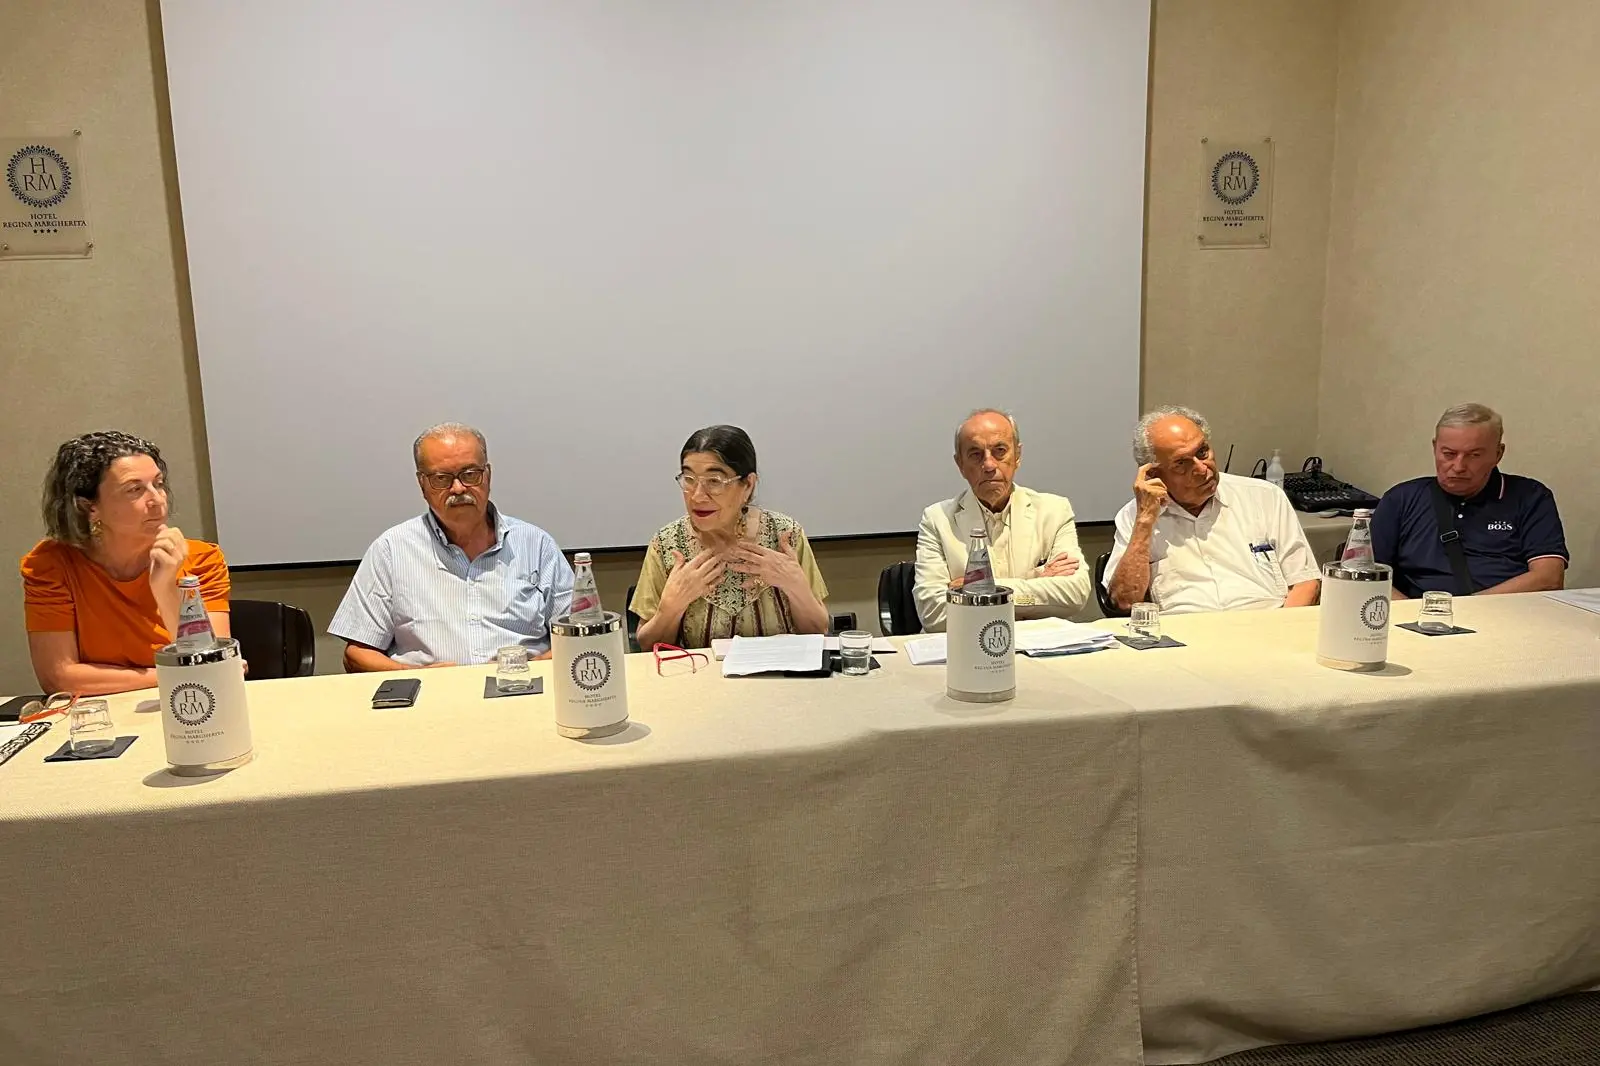 Il Comitato tecnico-scientifico per l'insularità oggi a Cagliari. Da sinistra: Rita Dedola, Giuseppe Biggio, Maria Antonietta Mongiu, Bebetto Ballero, Giovanni Barrocu, Gian Valerio Sanna